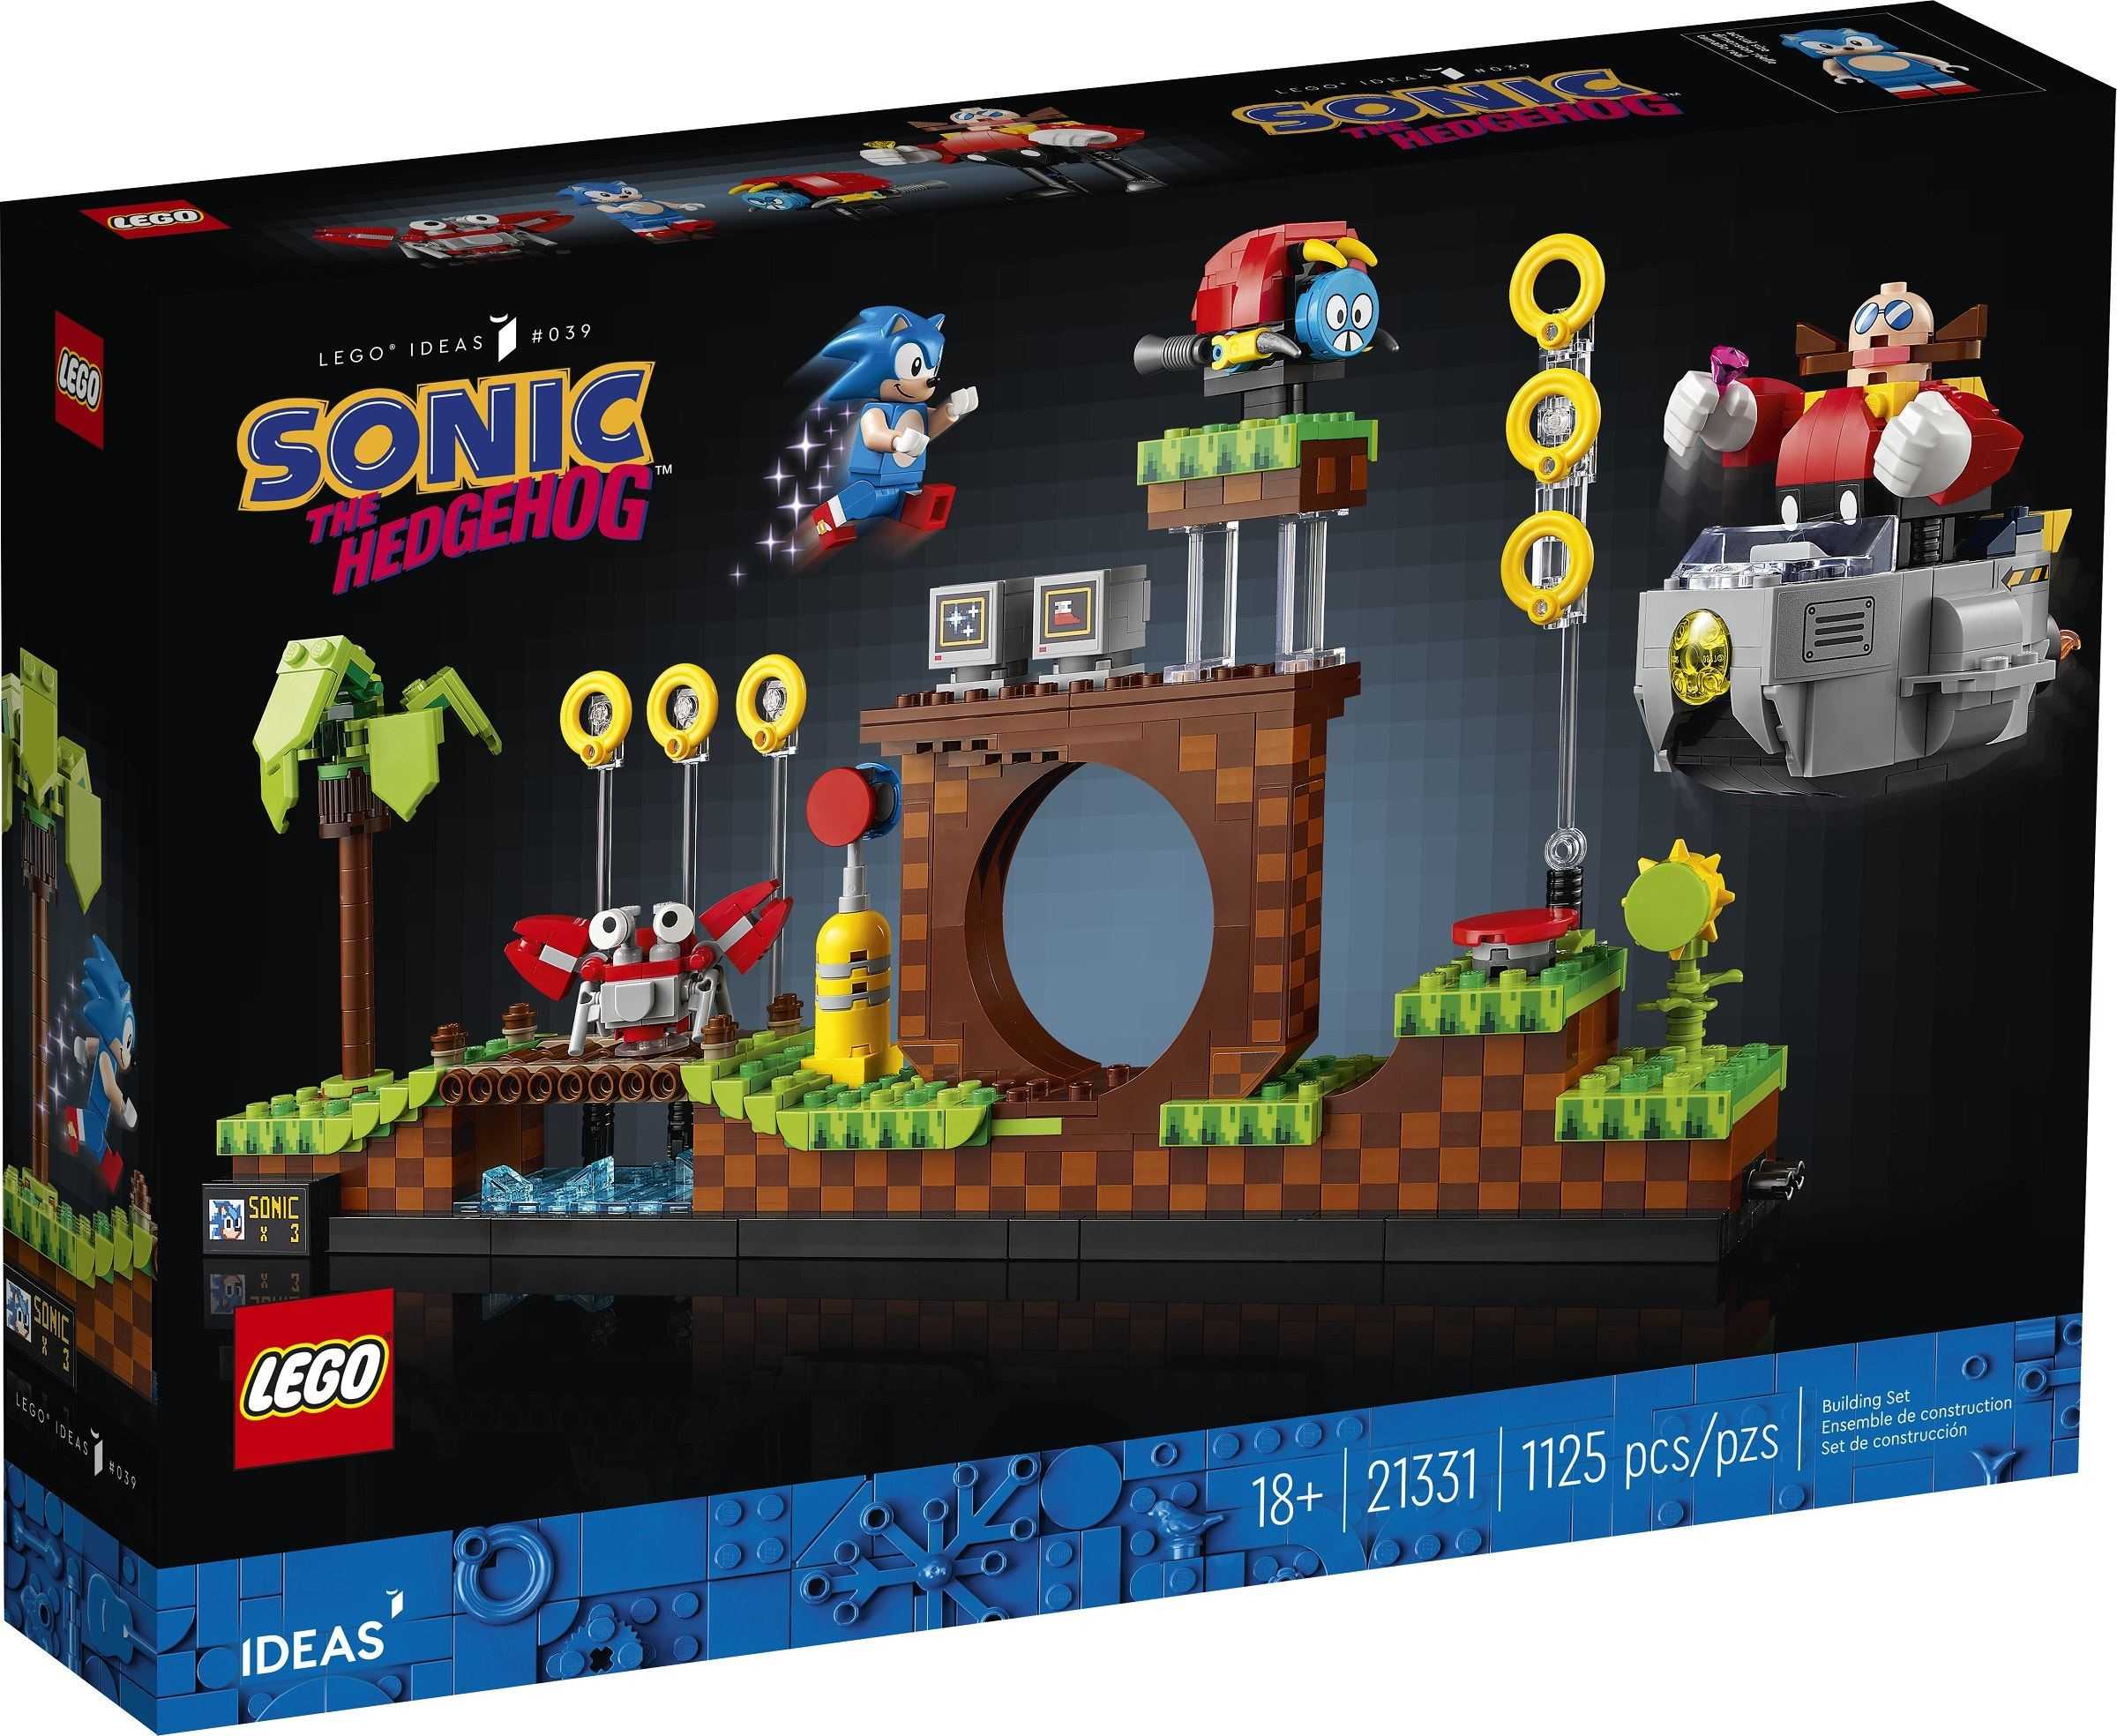 【電積系@北投】樂高LEGO21331 音速小子 Sonic The Hedgehog